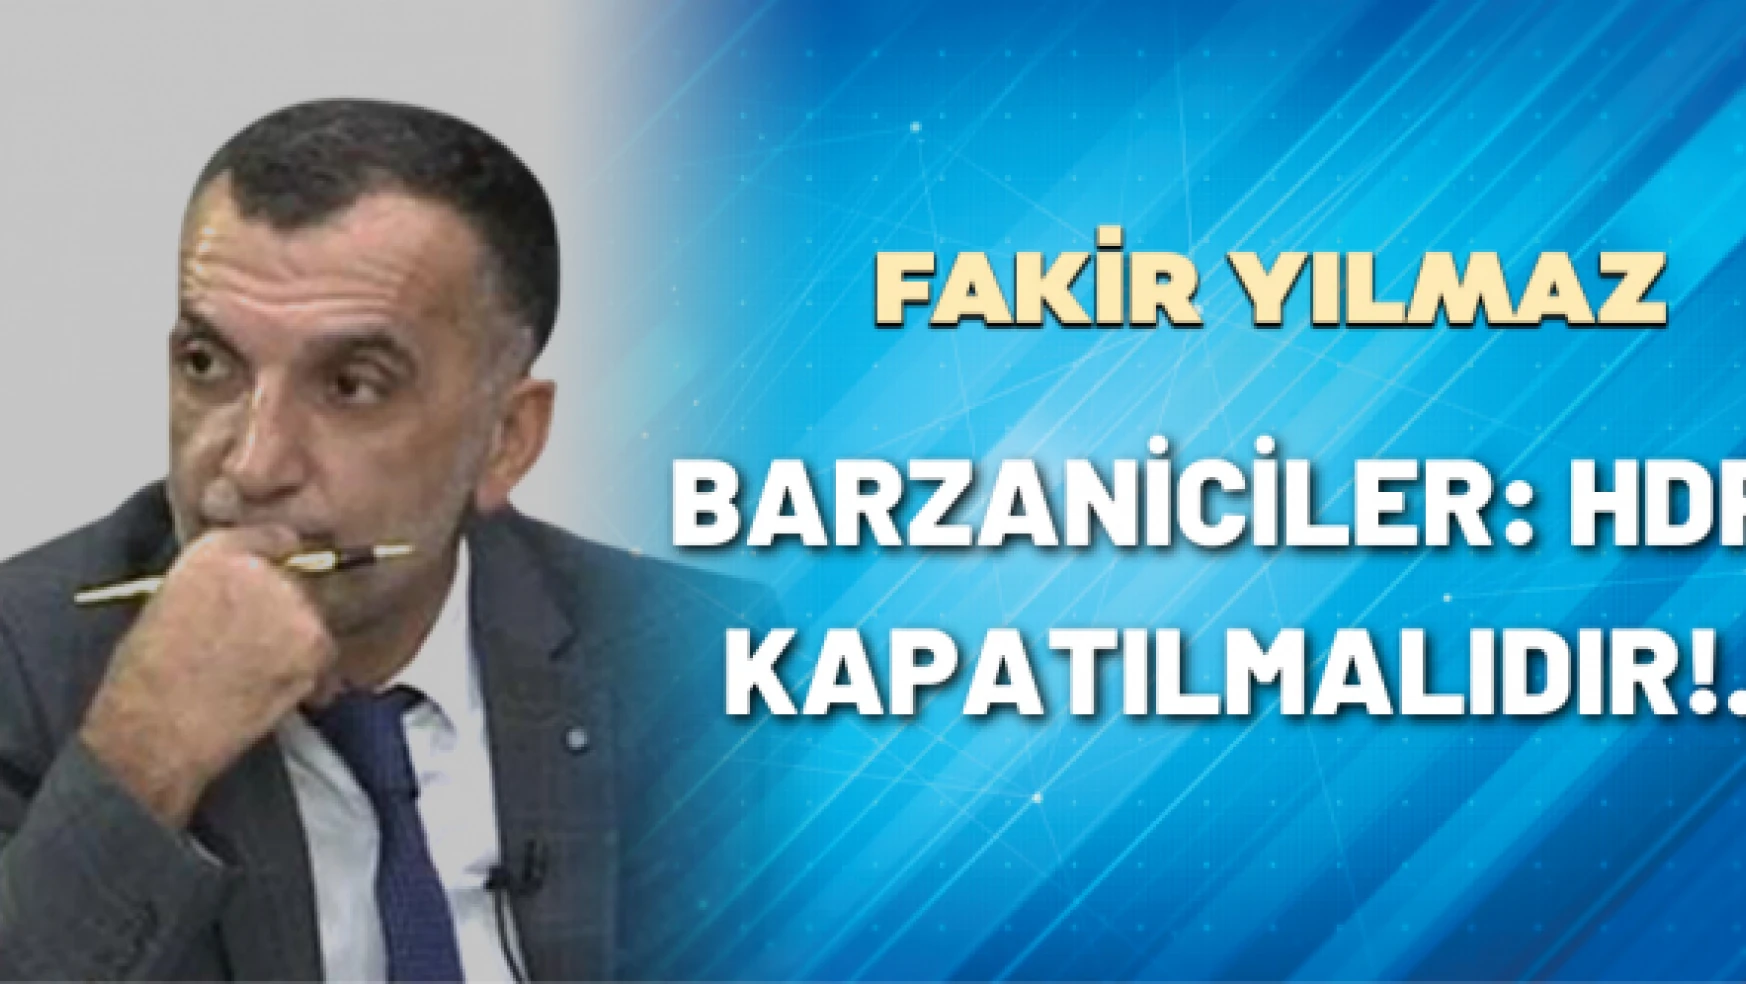 Gazeteci Fakir Yılmaz yazdı: Barzaniciler: HDP kapatılmalıdır!..